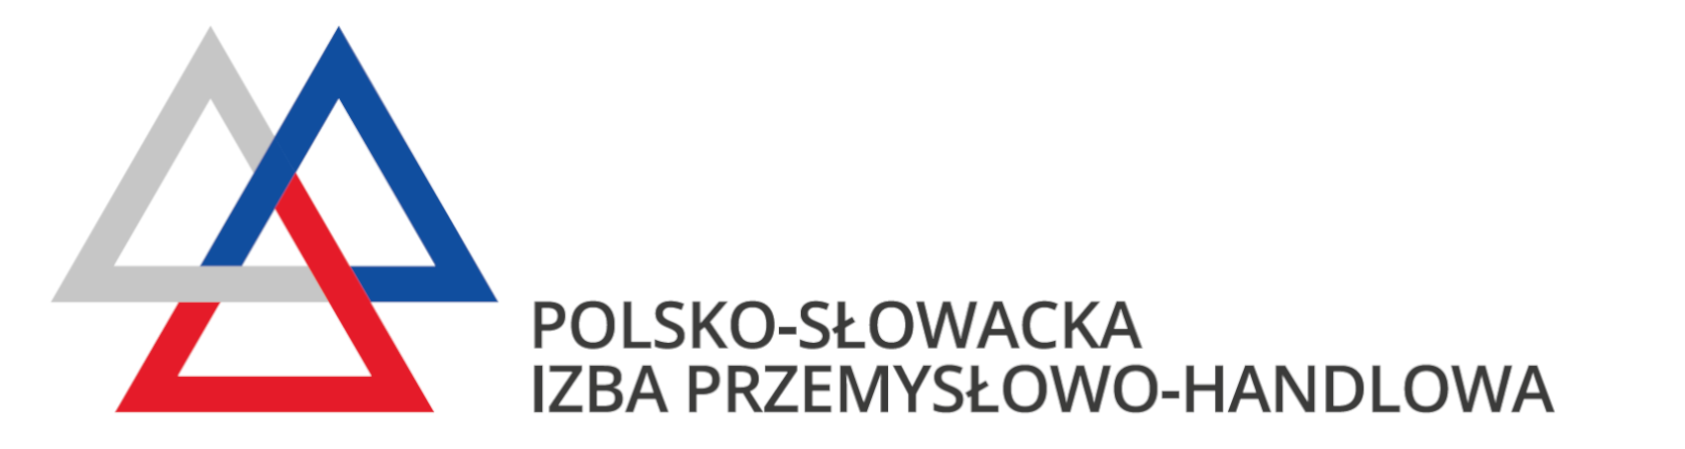 Polsko-Słowacka Izba Przemysłowo-Handlowa